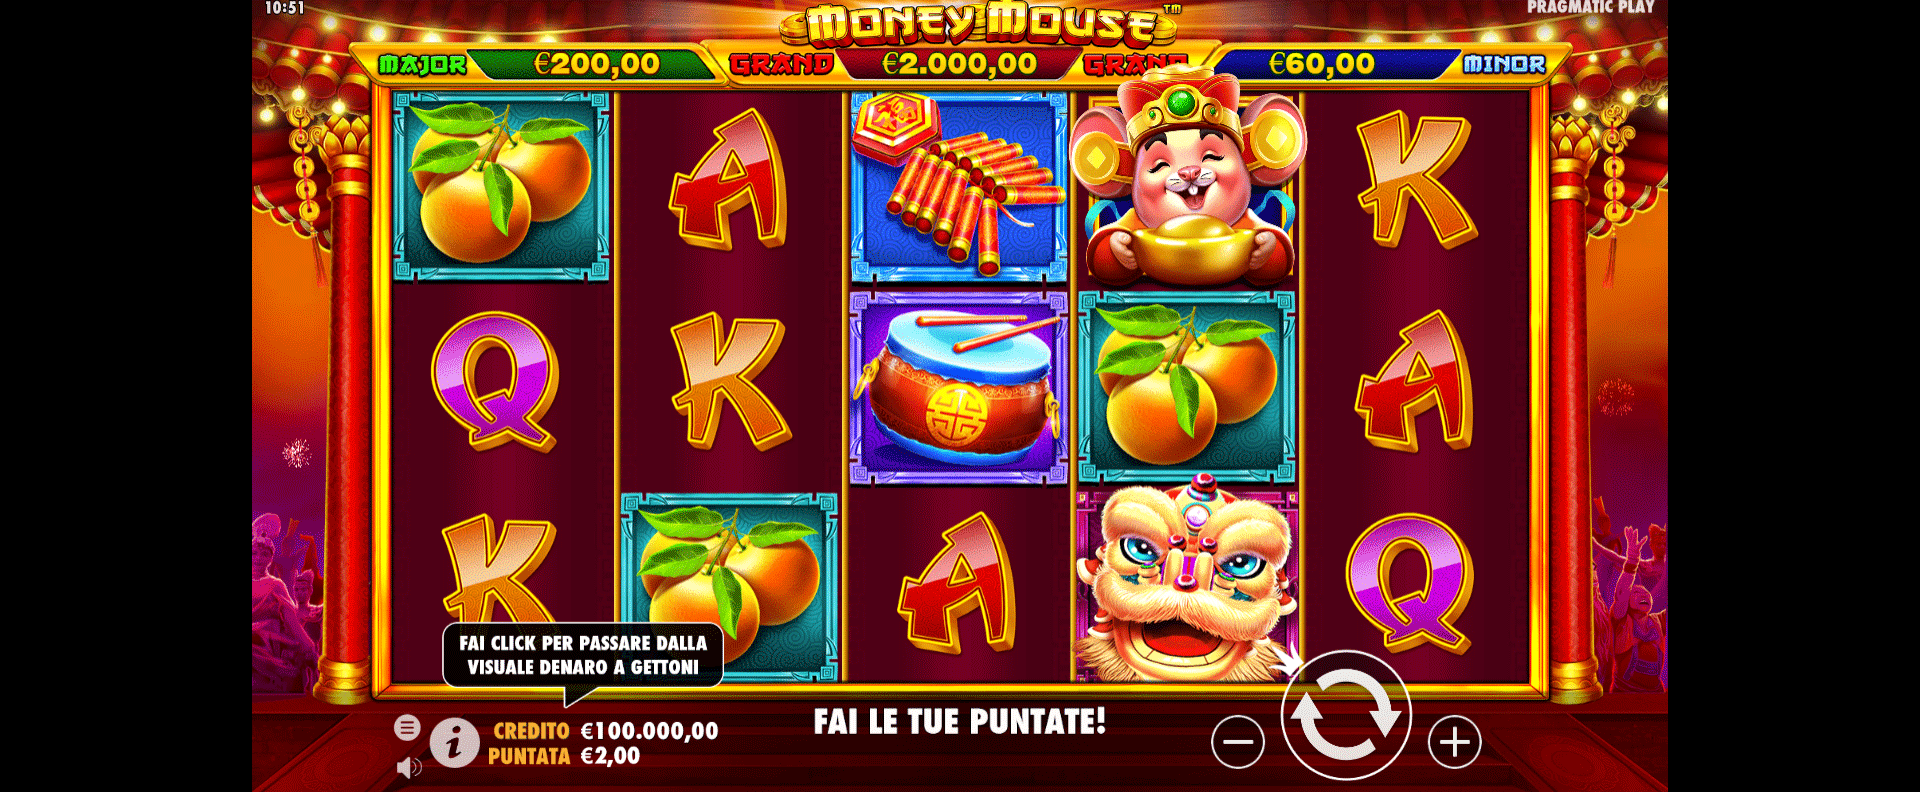 griglia del gioco slot online money mouse